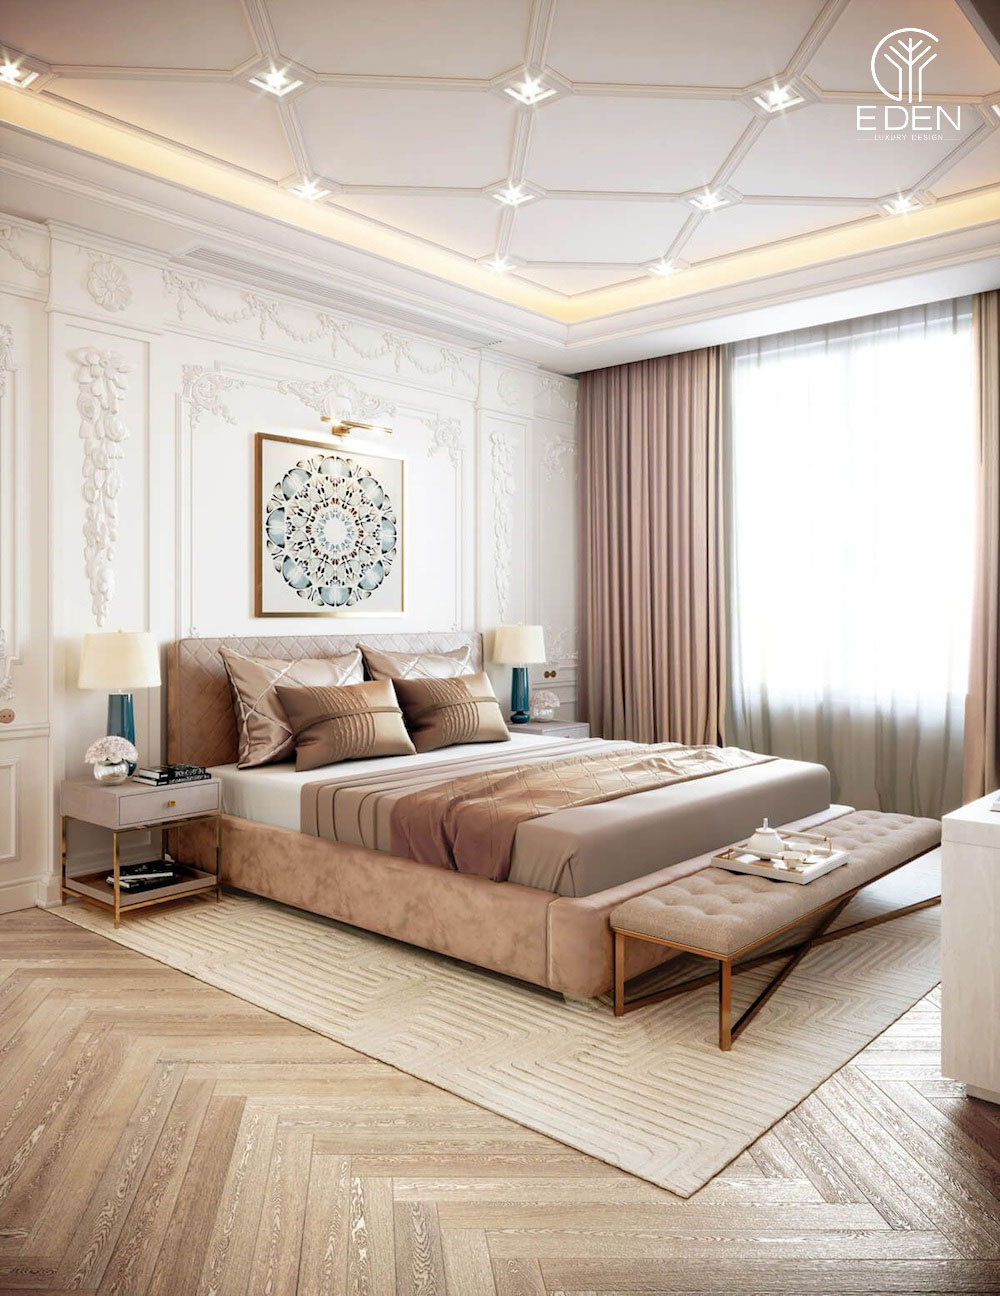 Trần thạch cao cho phòng ngủ tân cổ điển với thiết kế ô vuông đan xen mới lạ